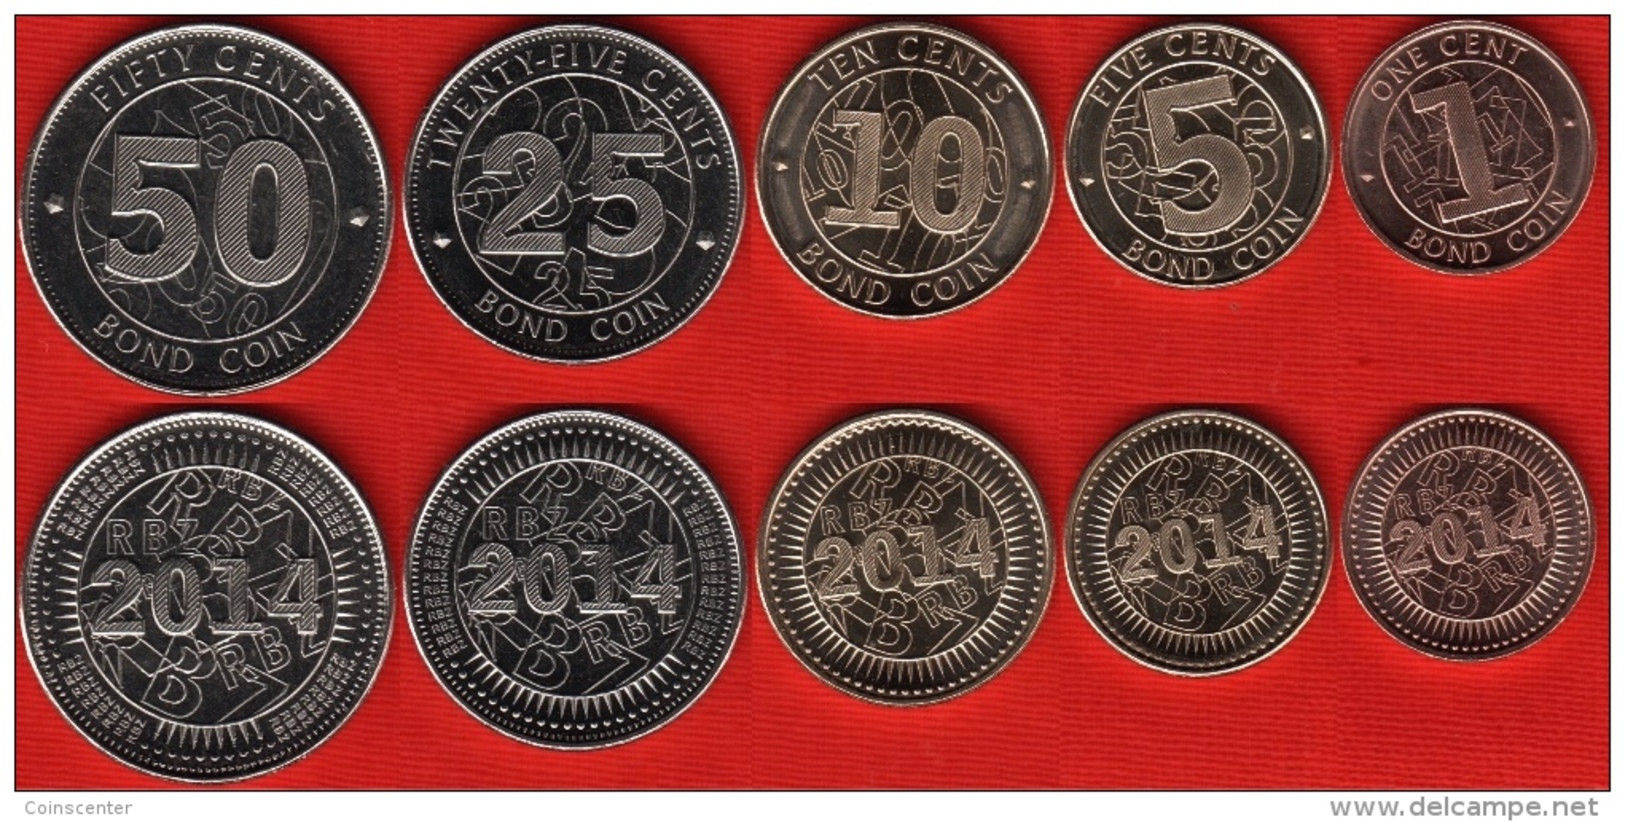 Zimbabwe Set Of 5 Coins: 1 - 50 Cents 2014 "Bond Coins" UNC - Simbabwe